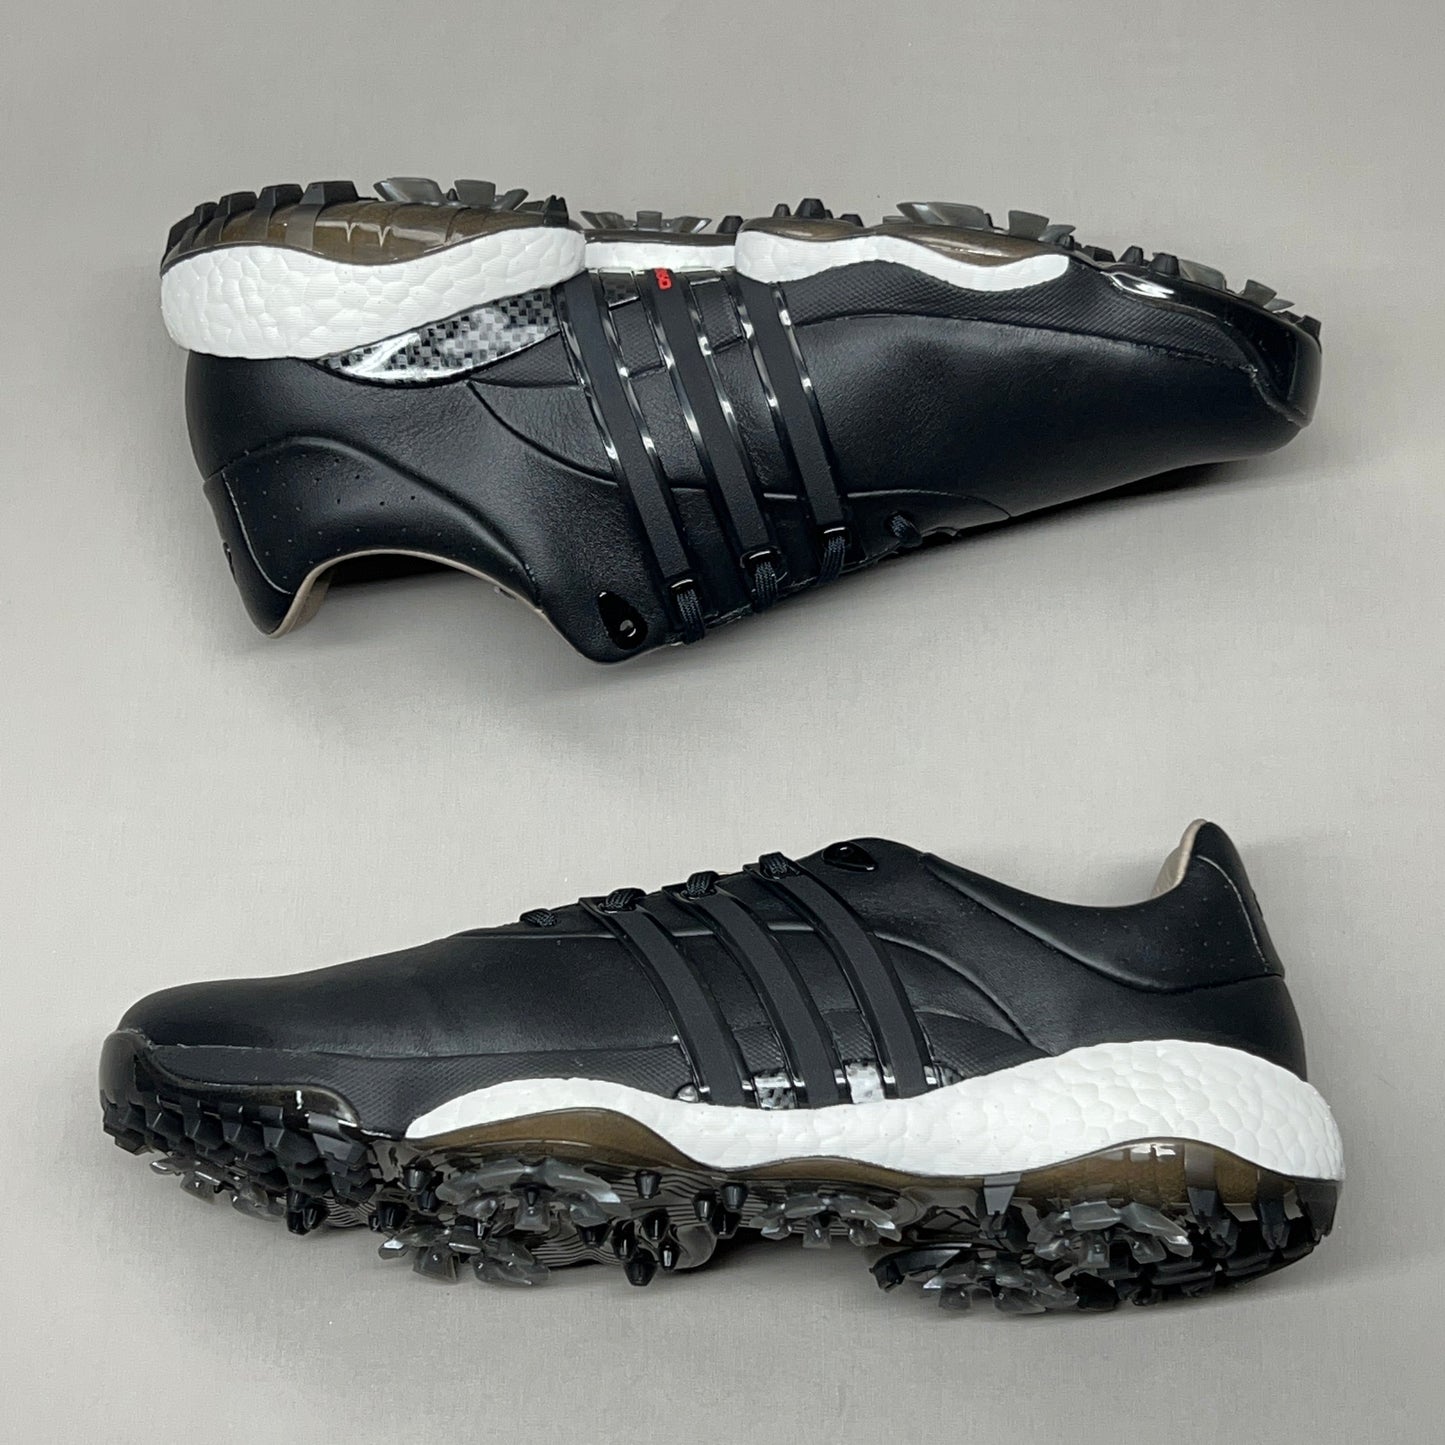 ADIDAS Golf Shoes TOUR360 22 Leather Men's Sz 12.5 Black / Iron Metallic GZ3158 (New)